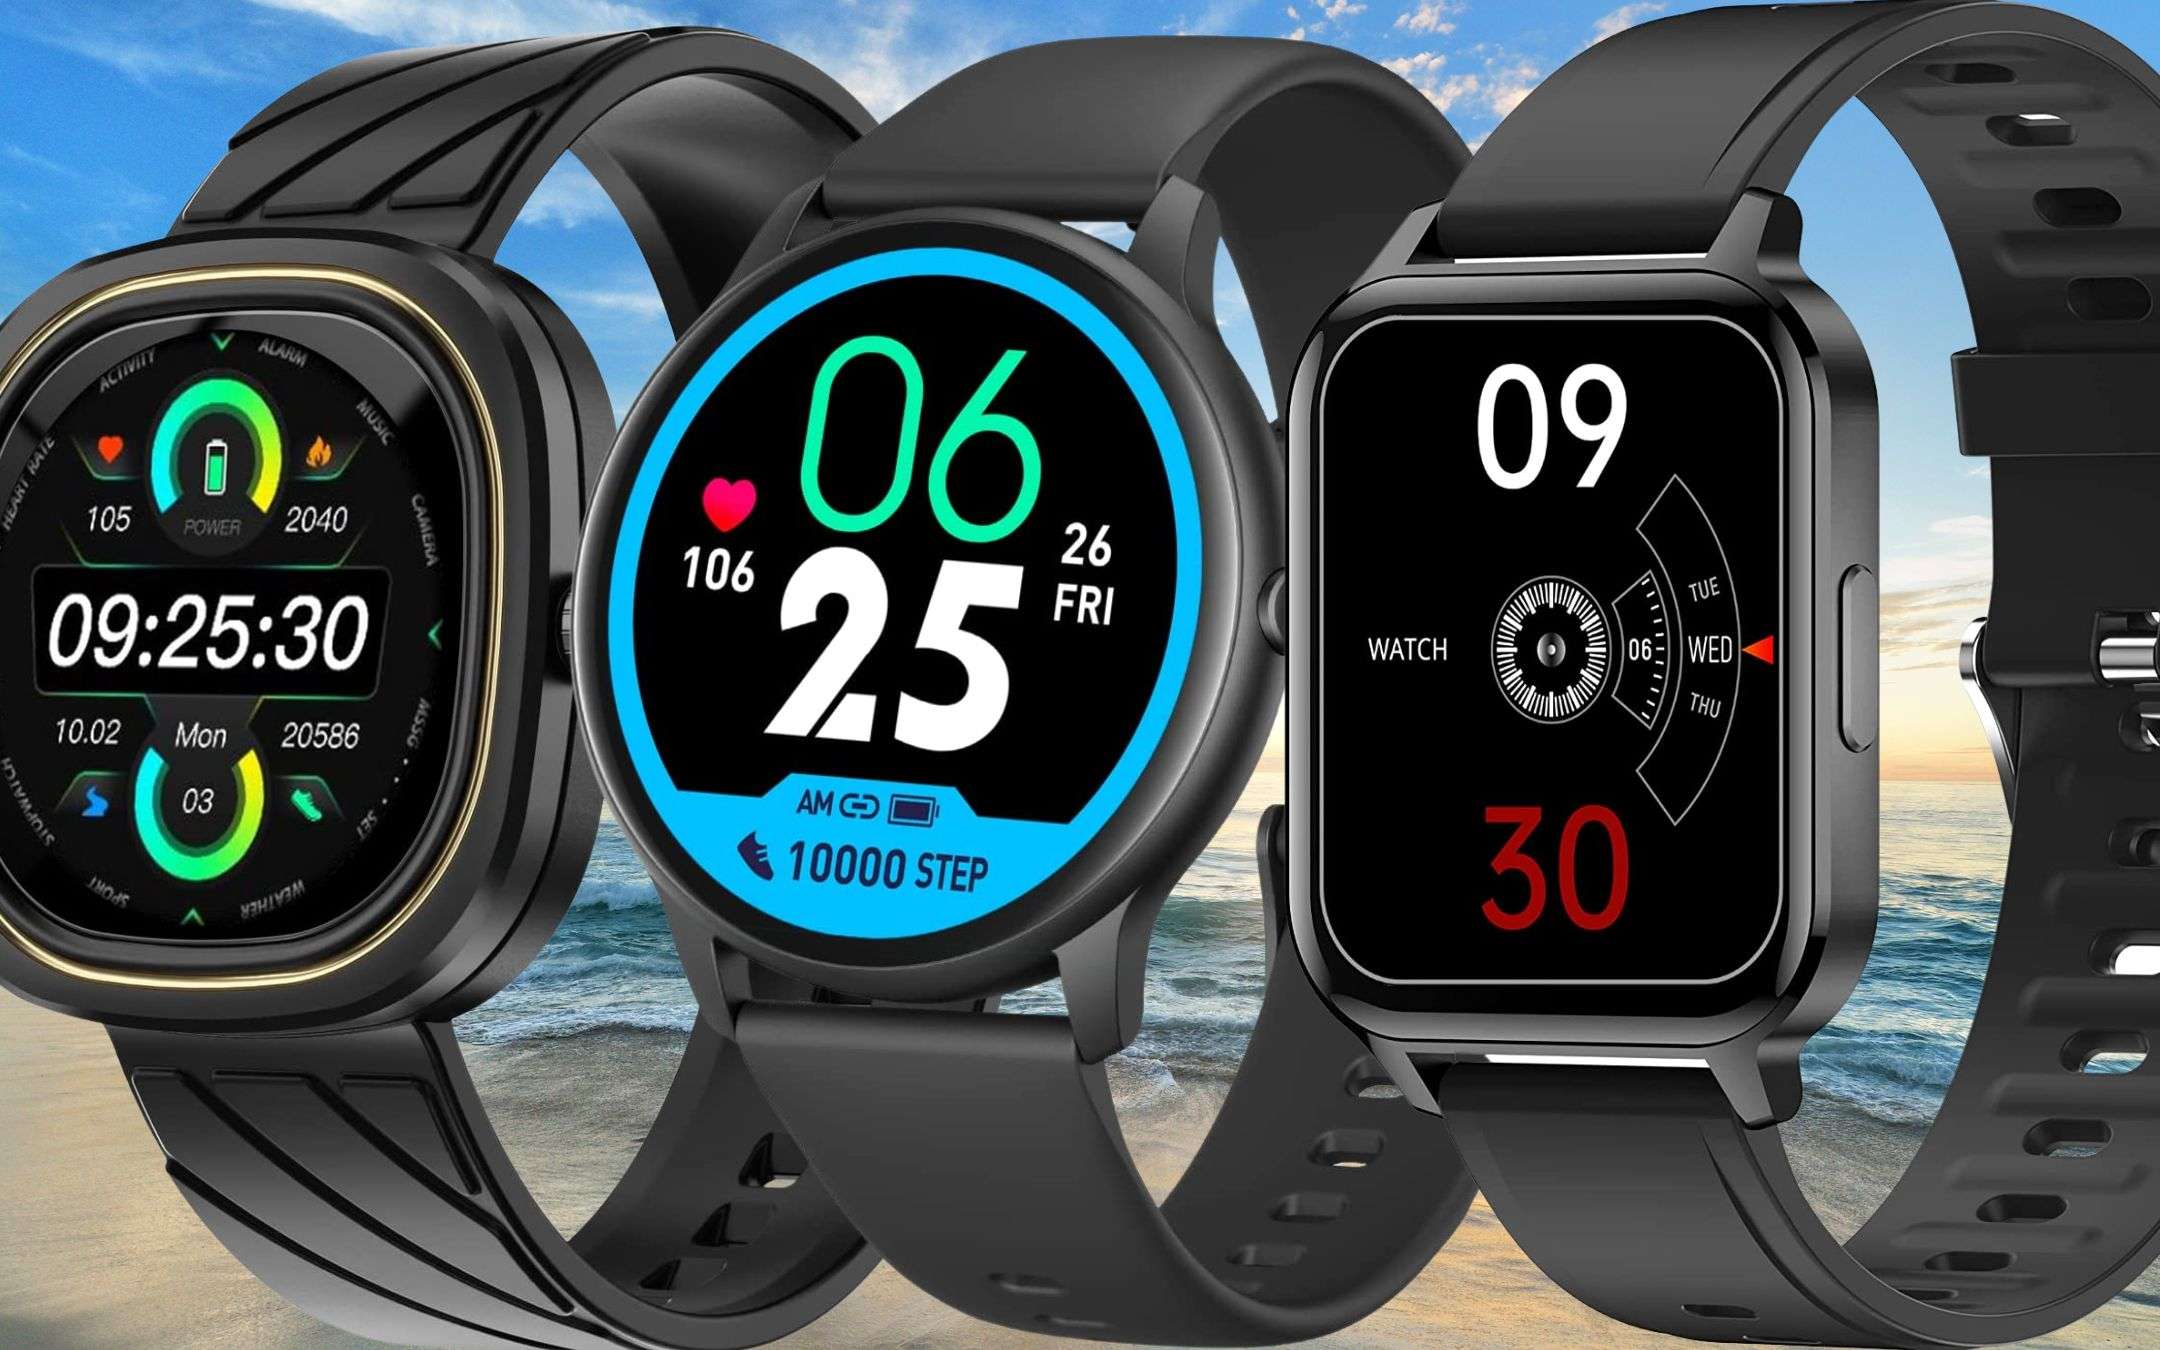 Tre smartwatch a meno di 20€ assolutamente IMPERDIBILI su Amazon